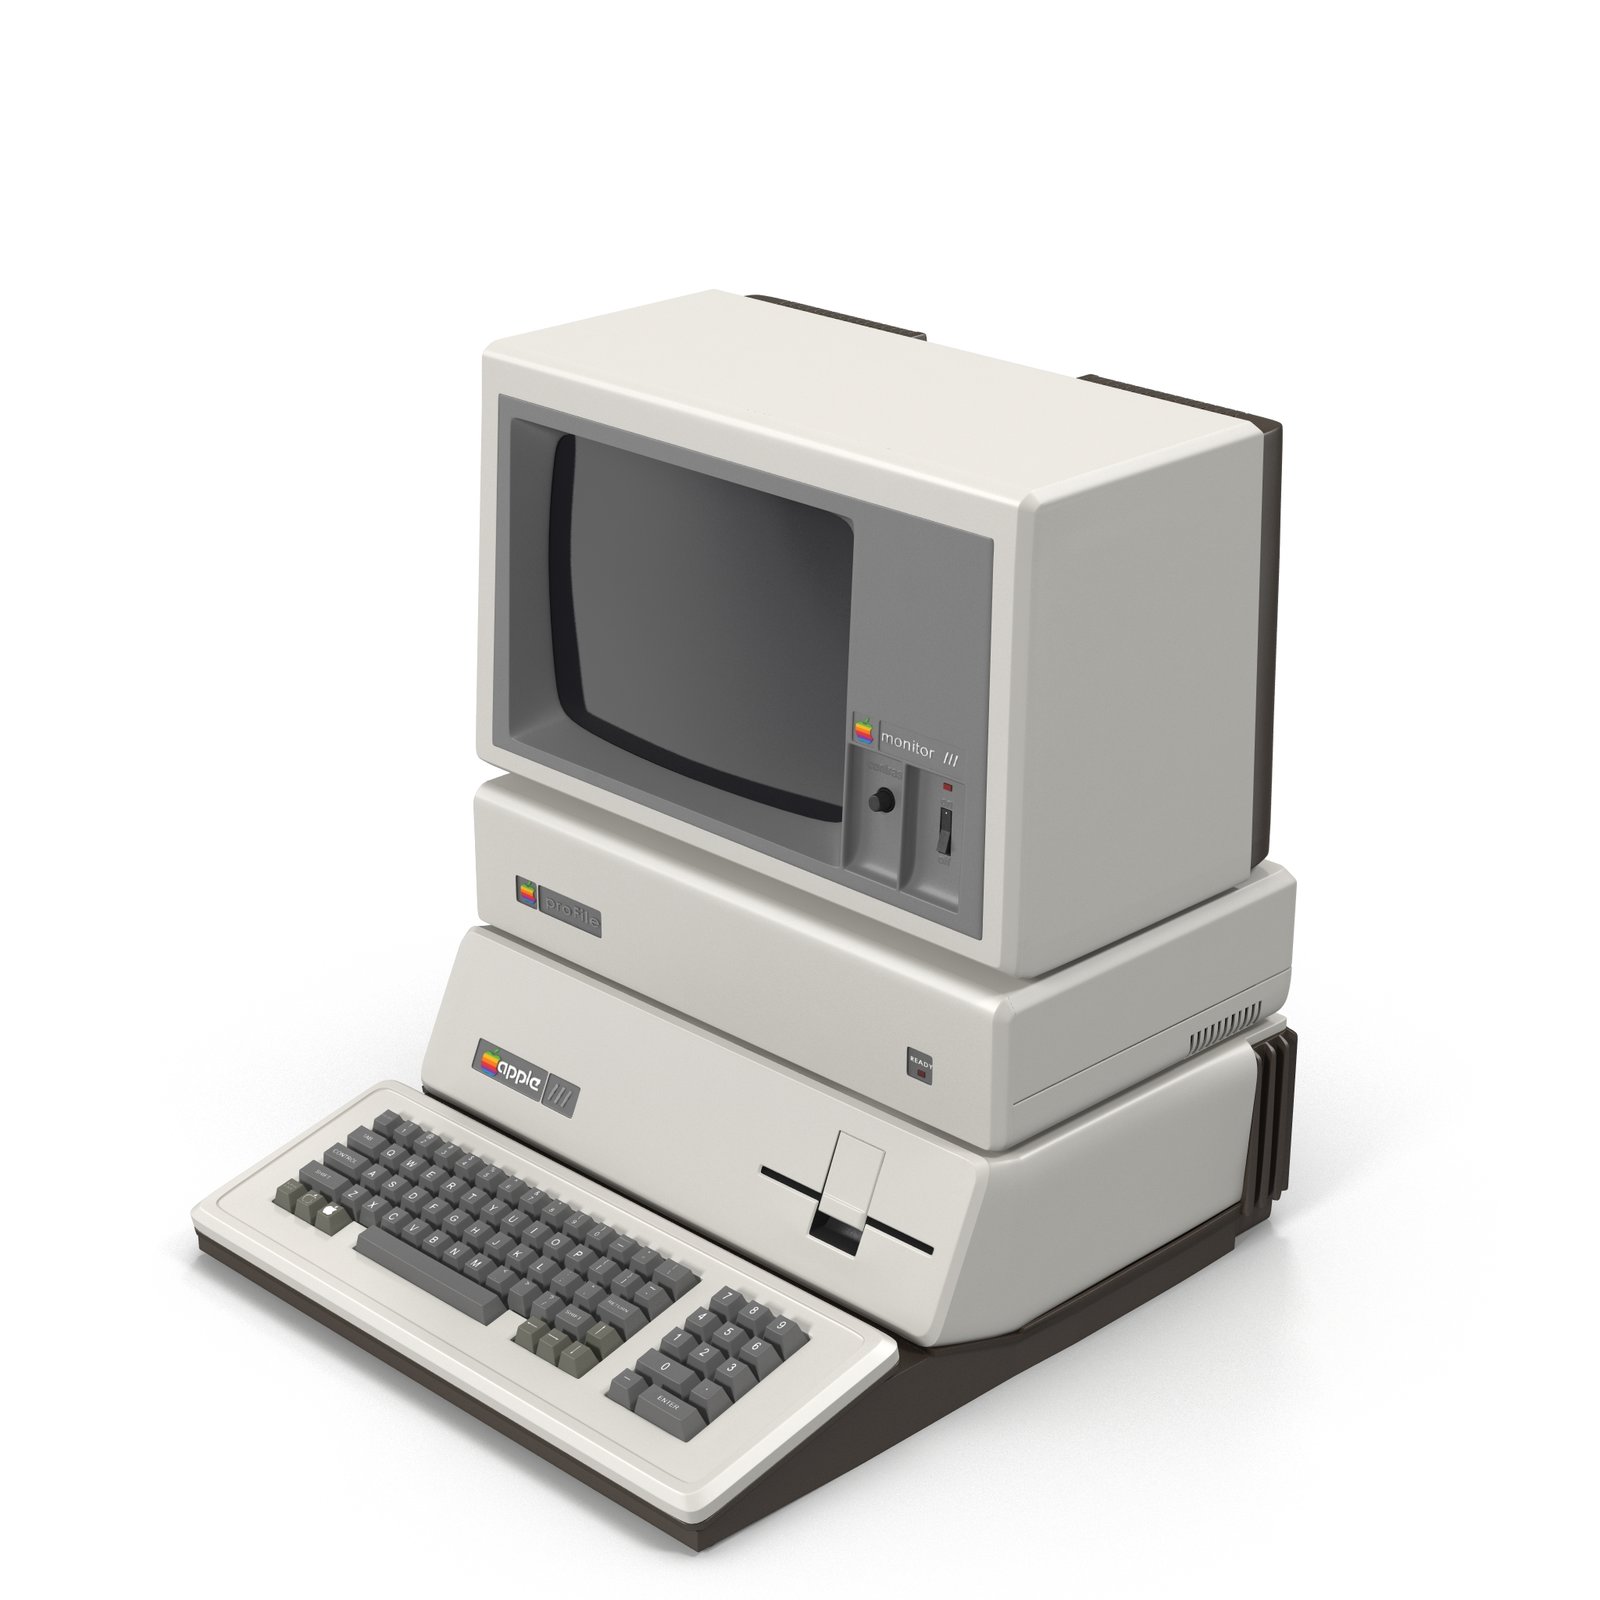 New apple 3. Apple III. Apple Computer 3. Apple 3 Plus. Apple 3 компьютер 1980.